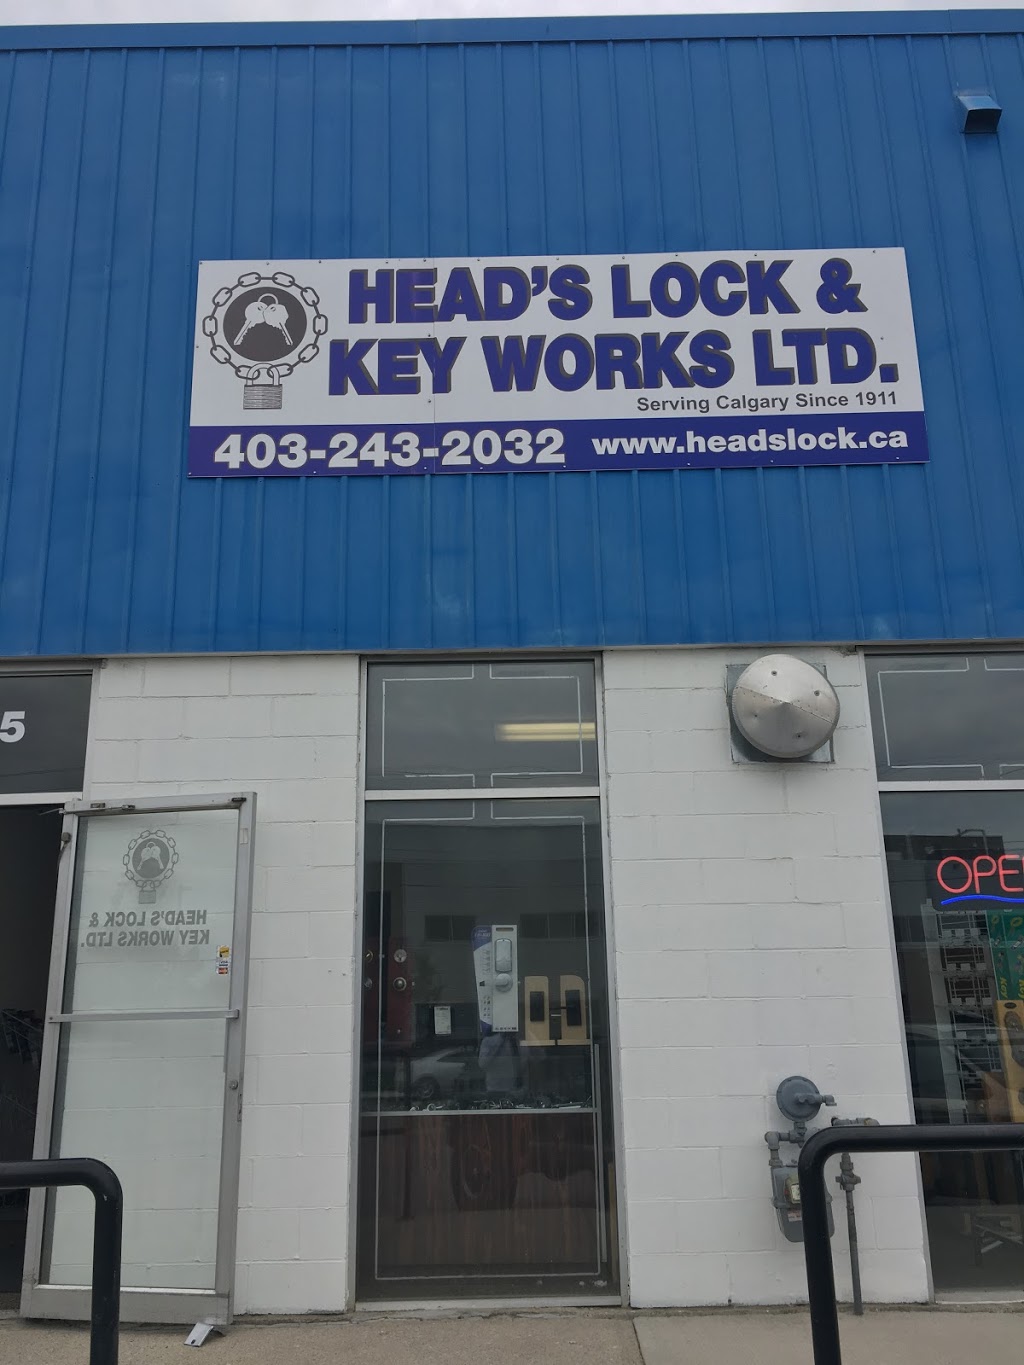 Heads Lock & Key Works Ltd | locksmith | 3925 Manchester Rd SE, Calgary, AB T2G 4A1, Canada | 4032432032 OR +1 403-243-2032